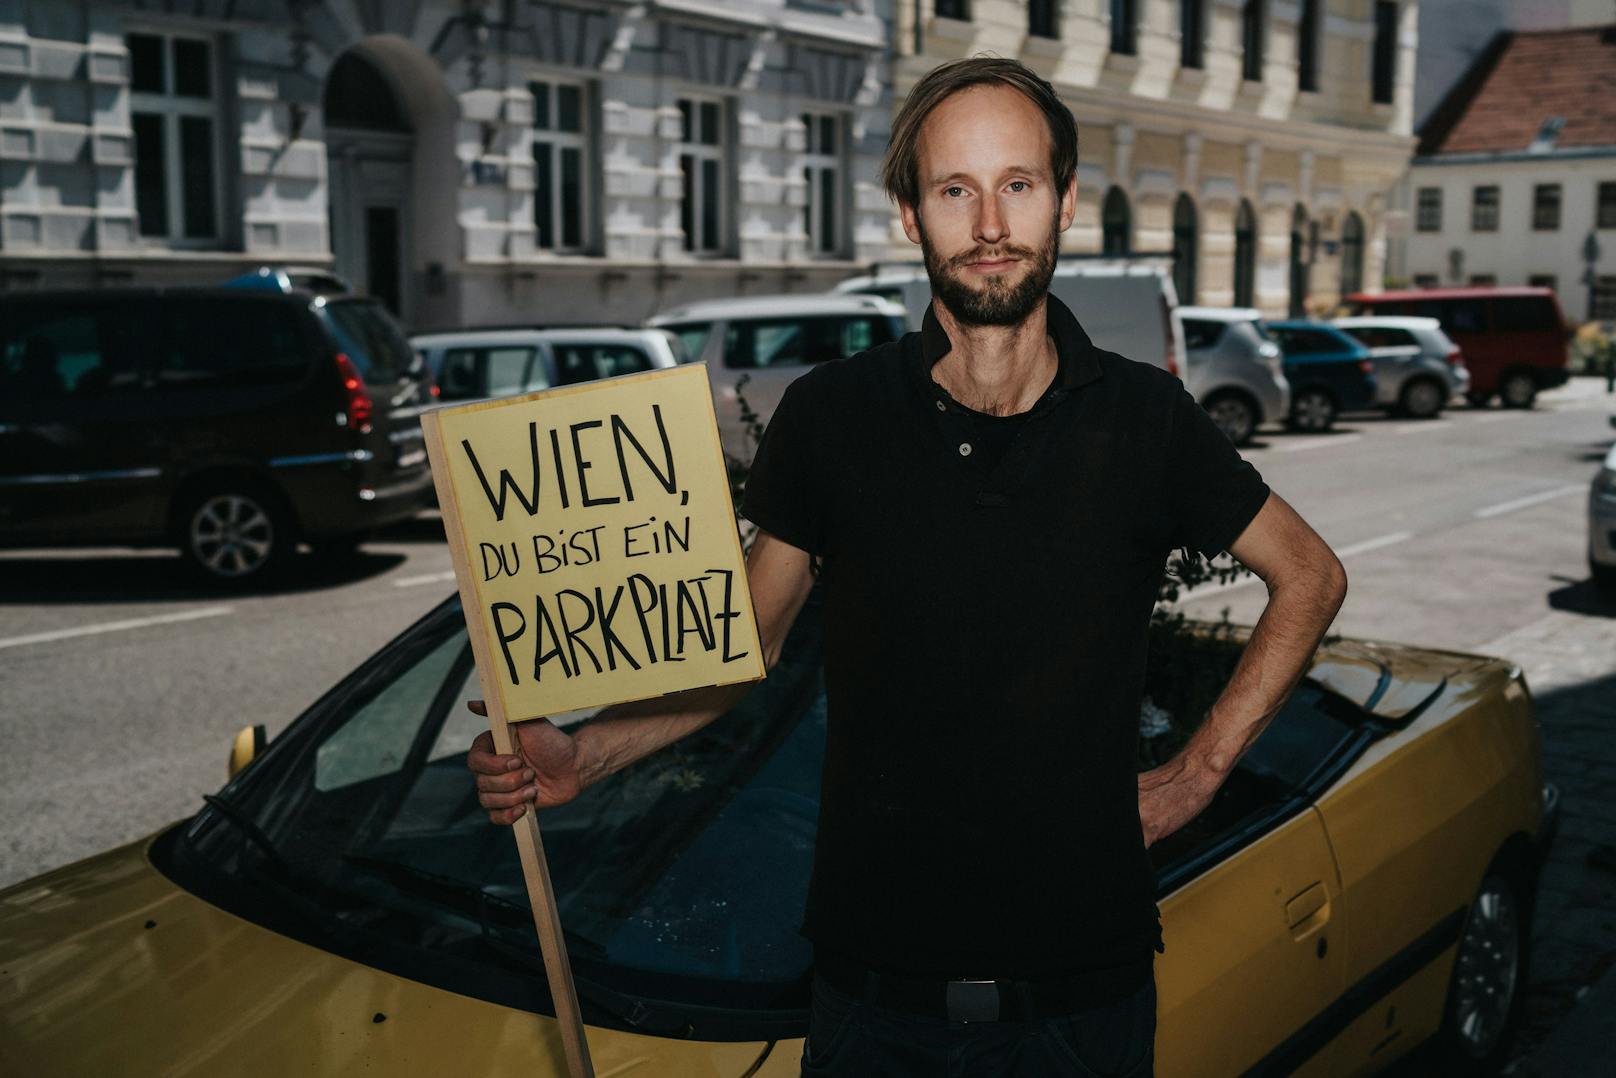 "Wien, du bist ein Parkplatz": So kritisiert Schwarz etwa, dass man mit einem Auto für zehn Euro pro Monat acht Quadratmeter öffentlichen Raum privatisieren darf. Mit einer normalen Hochbeet gehe das aber nicht.